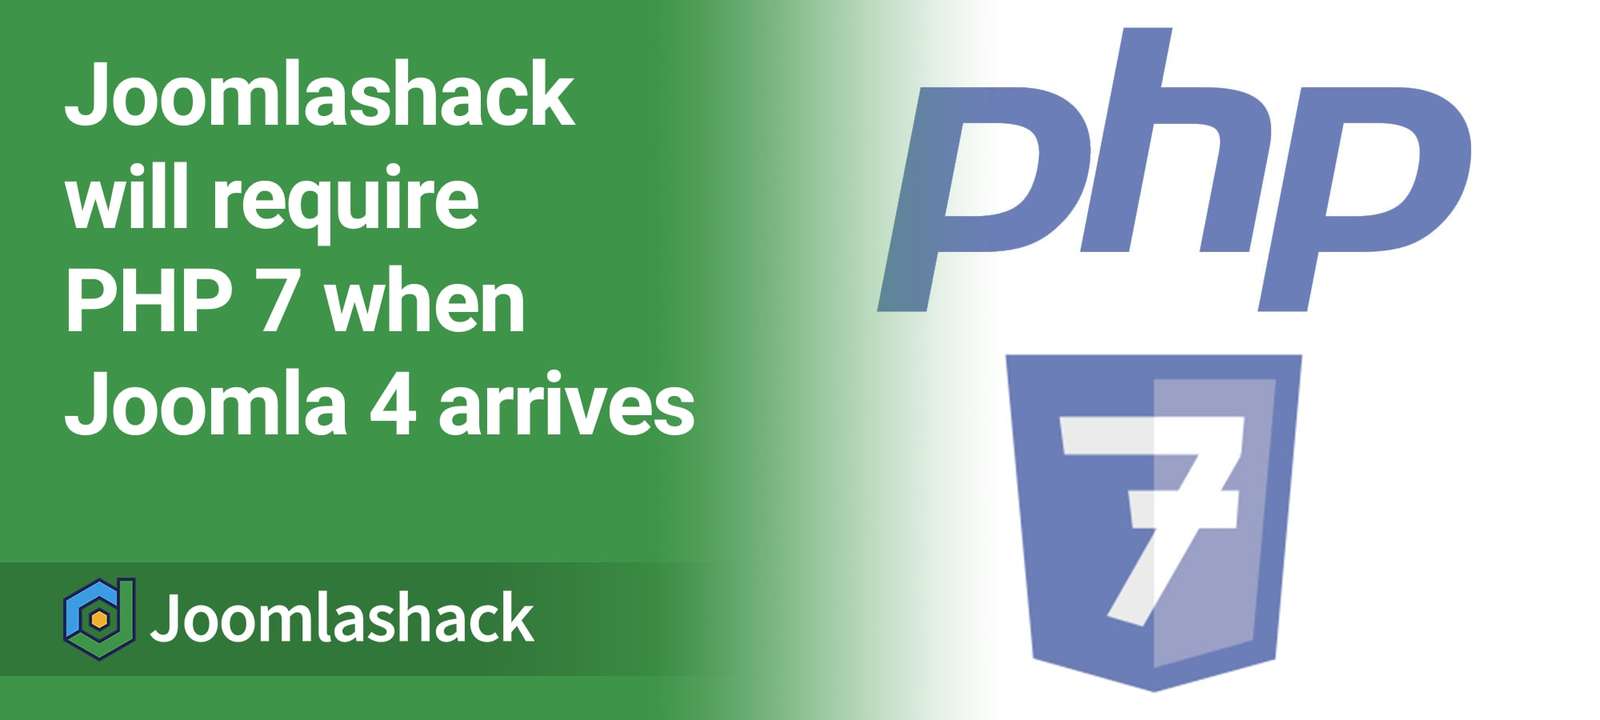 Joomlashack Will Require PHP 7 When Joomla 4 Arrives